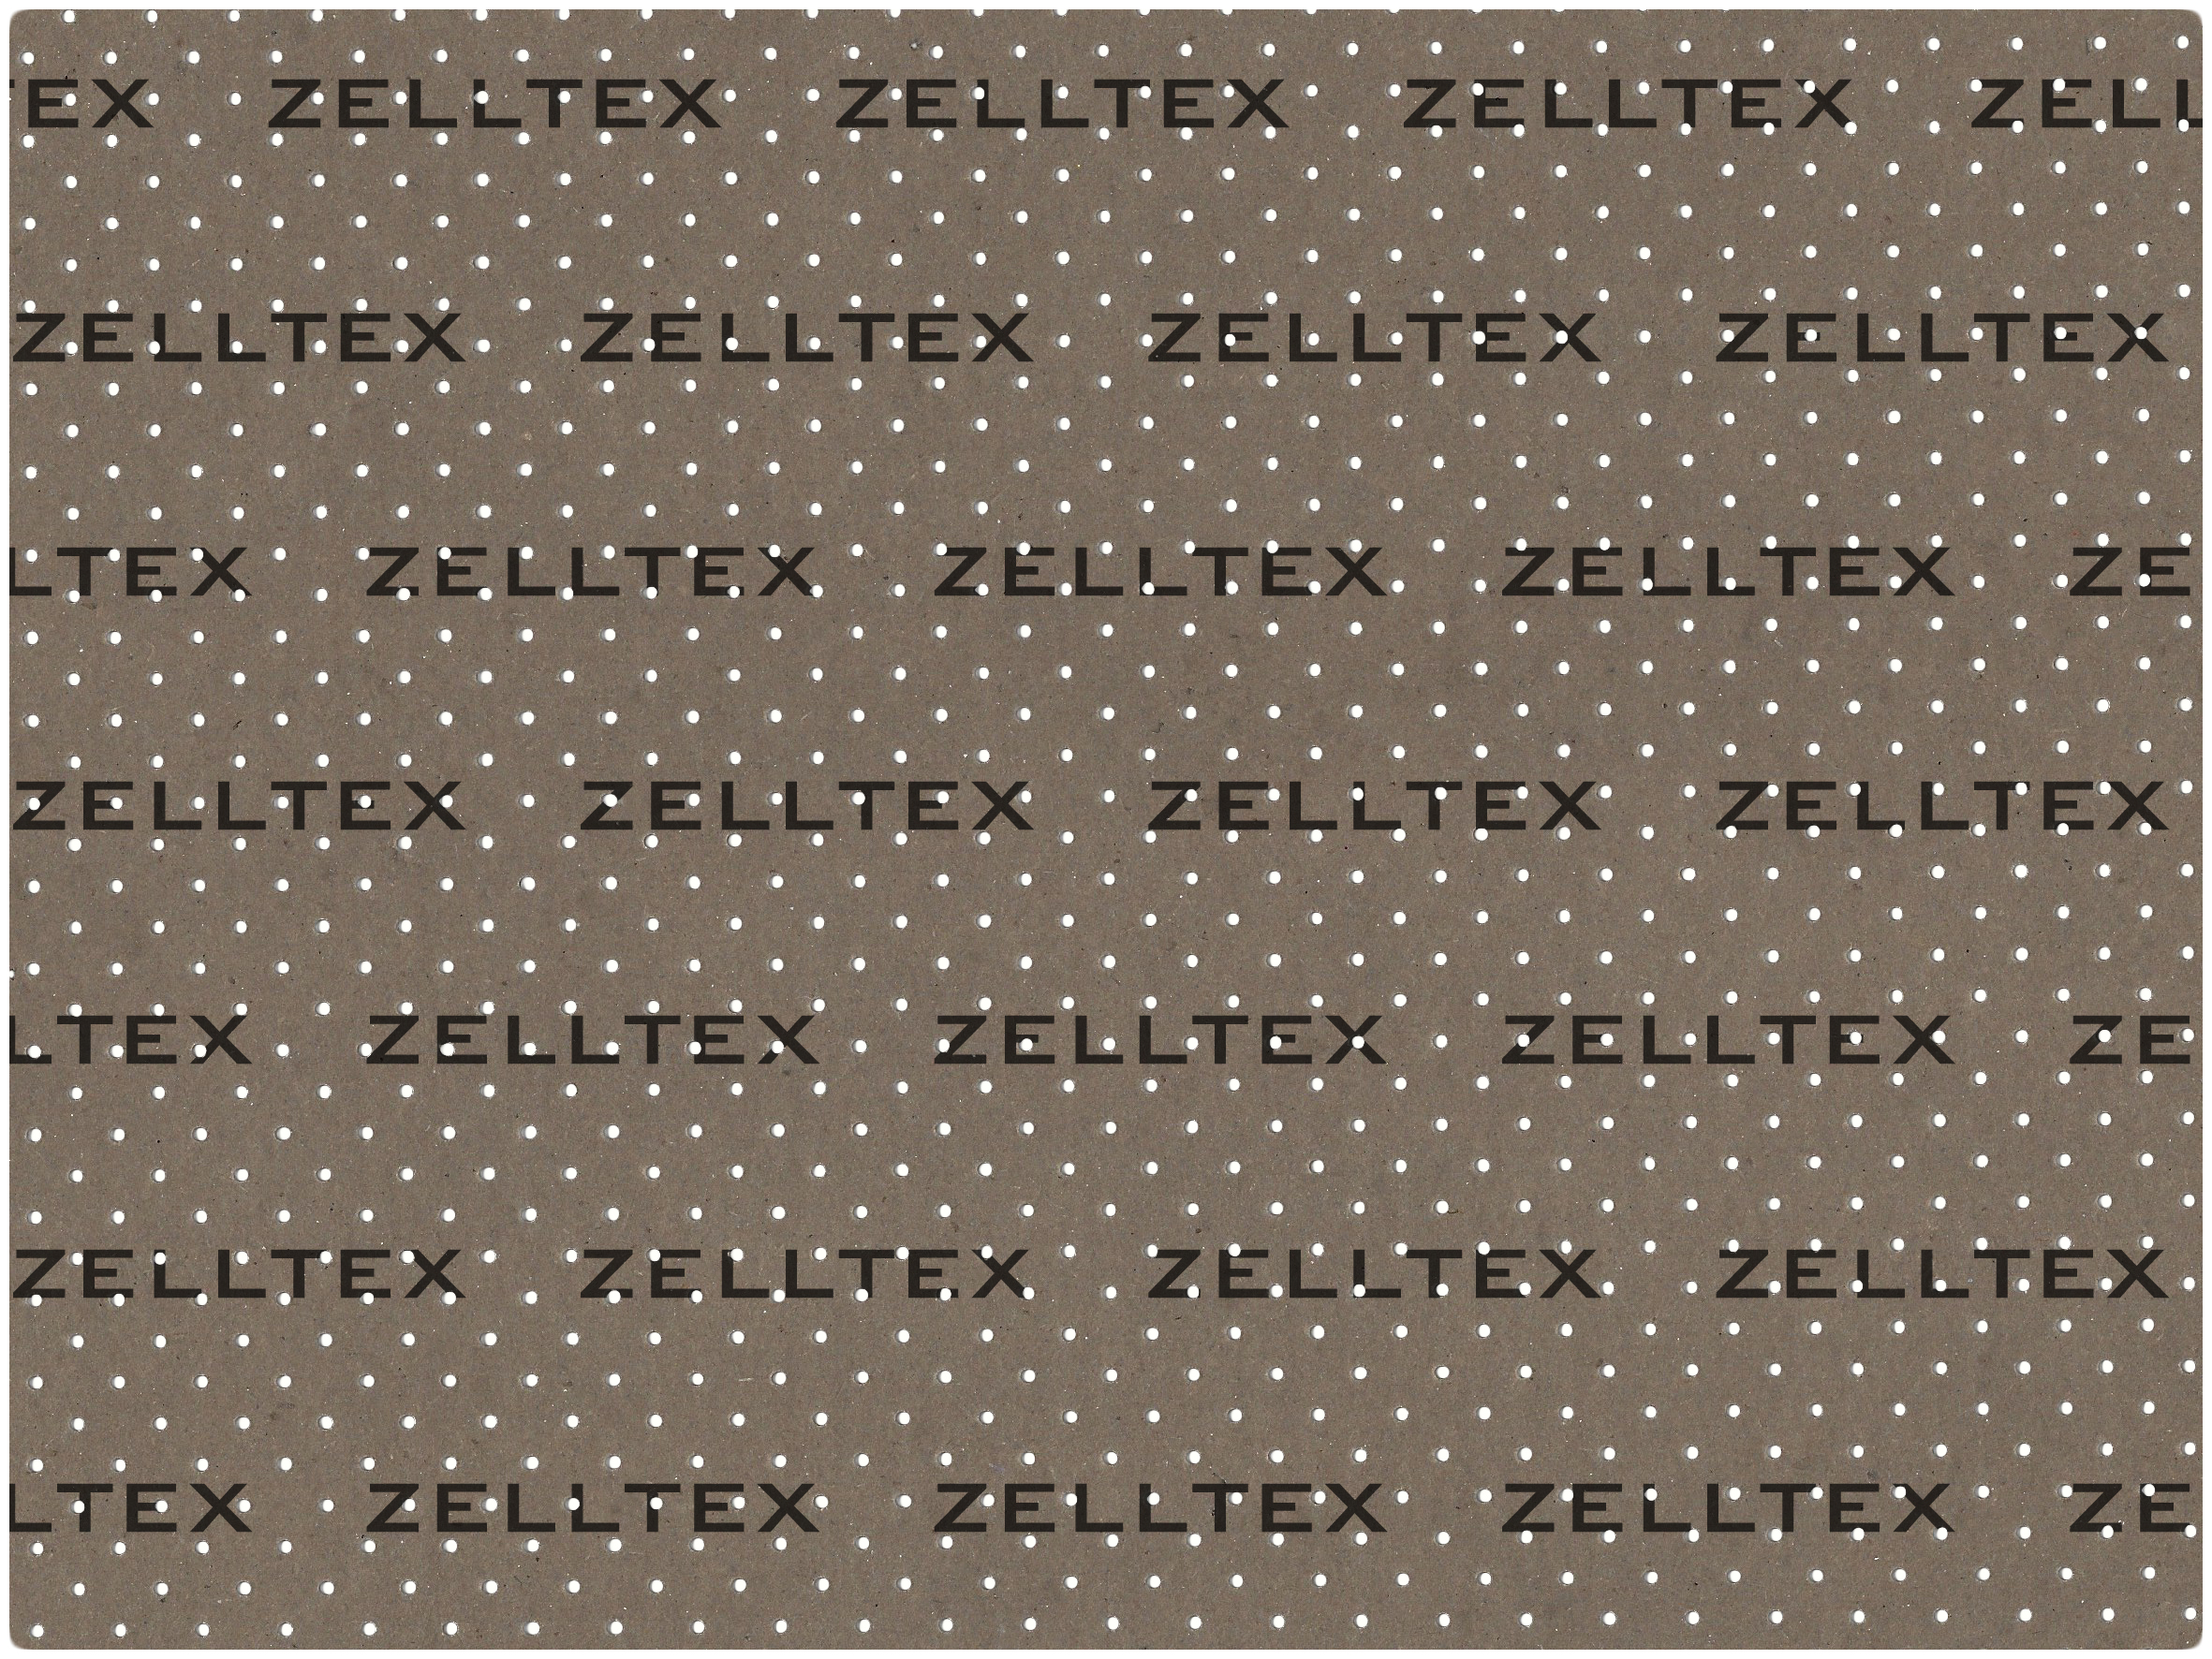 ZellTex - Schneidunterlage main image